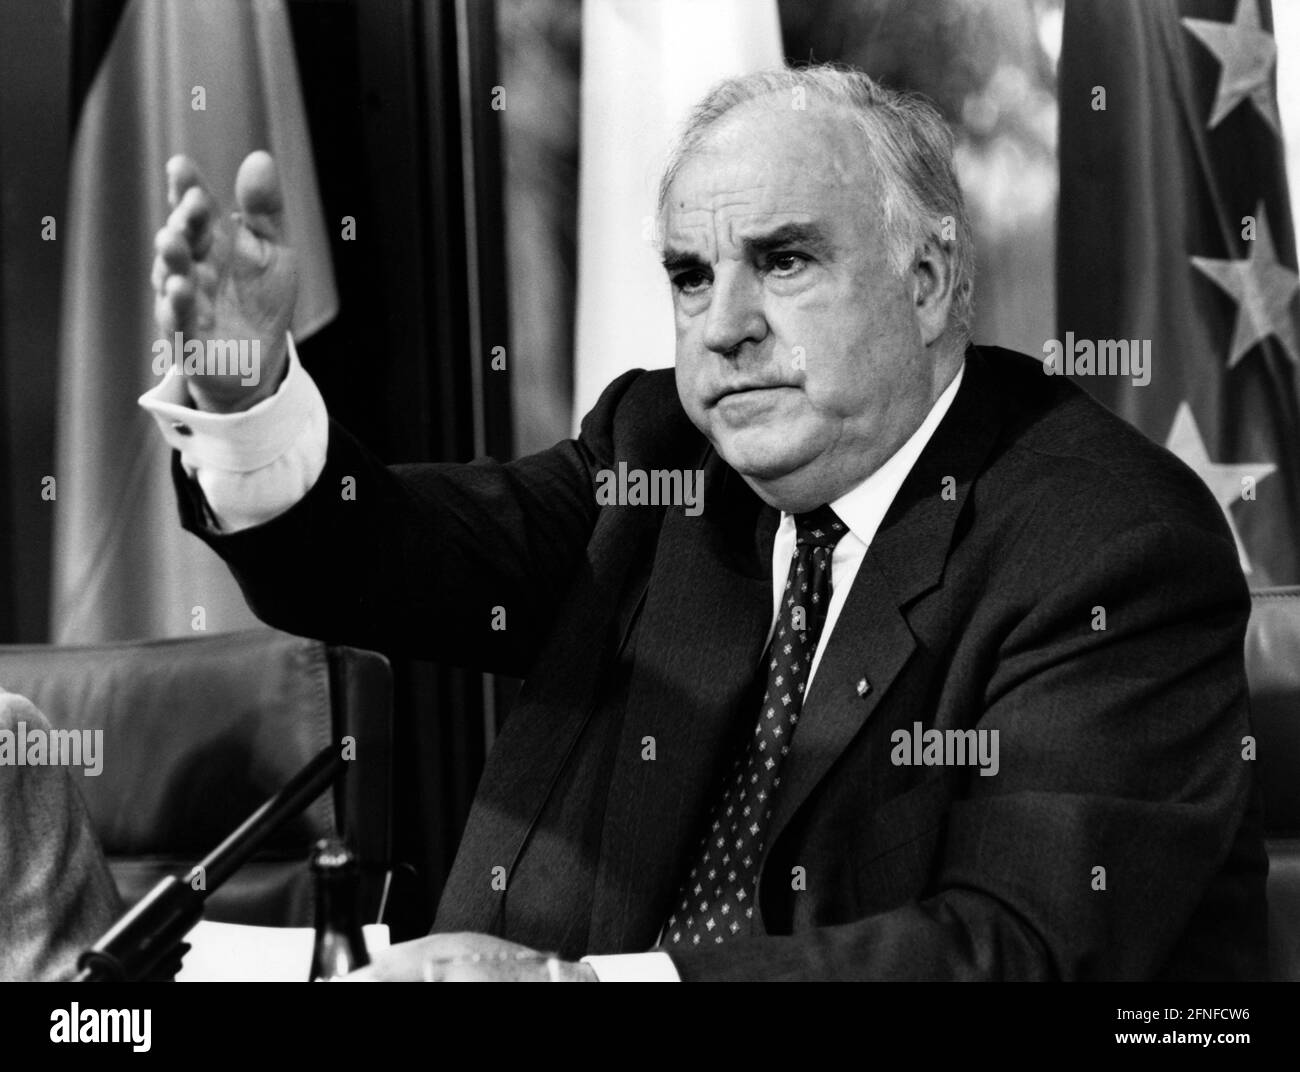 Bundeskanzler Helmut Kohl (CDU) im Porträt, gestikulierend. Im Hintergrund links die Nationalflagge der Bundesrepublik Deutschland, rechts die Europaflagge. [Automatisierte Übersetzung] Stockfoto